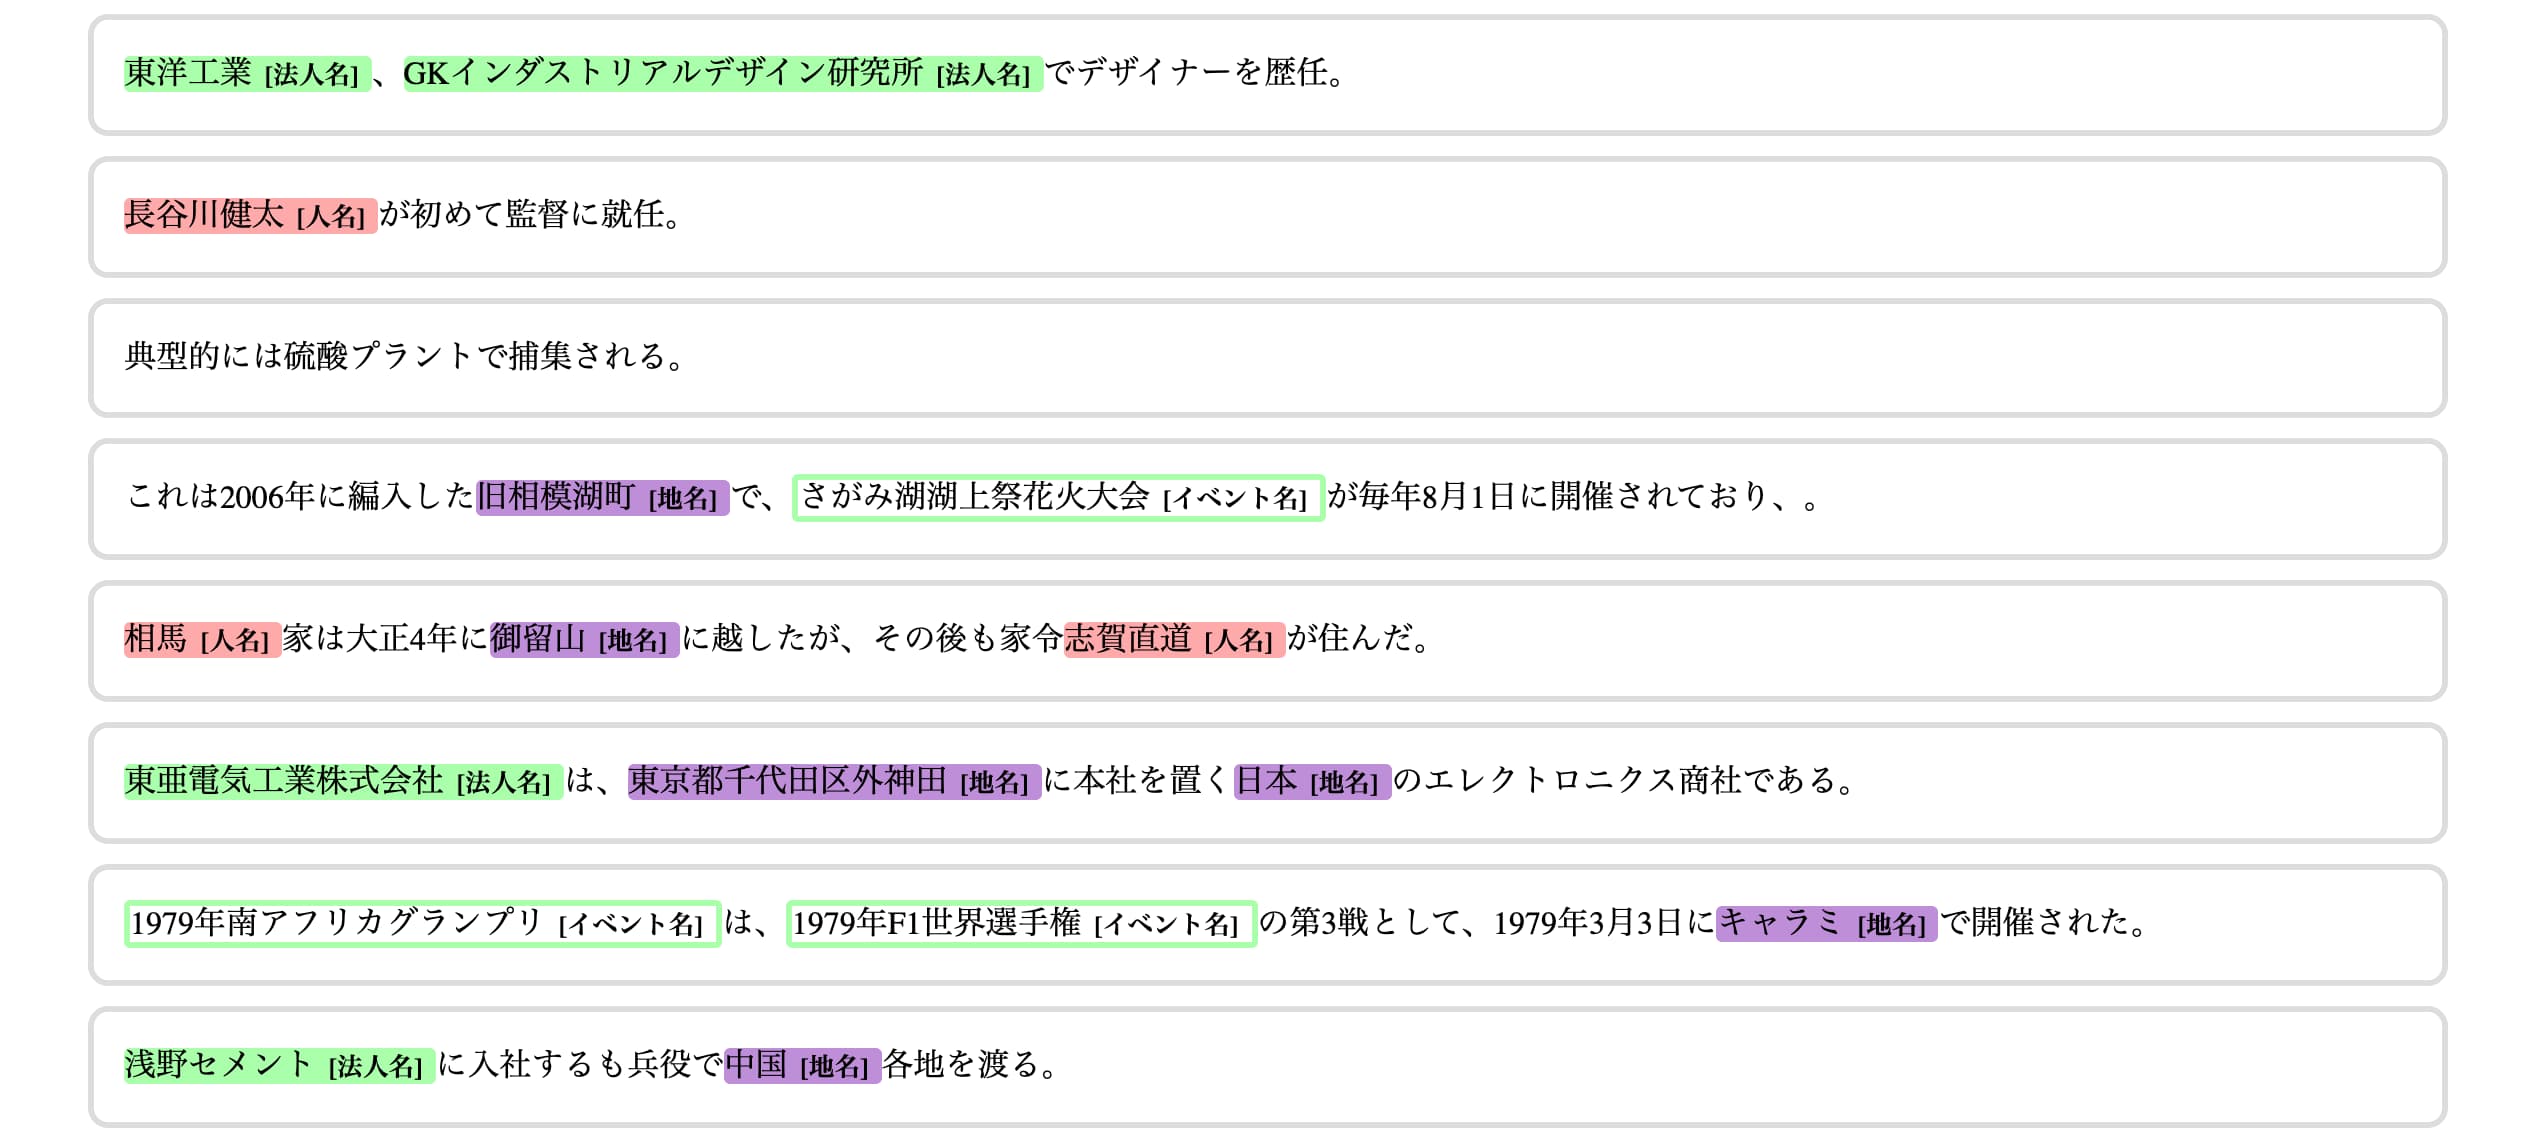 Wikipediaを用いた日本語の固有表現抽出データセットの公開